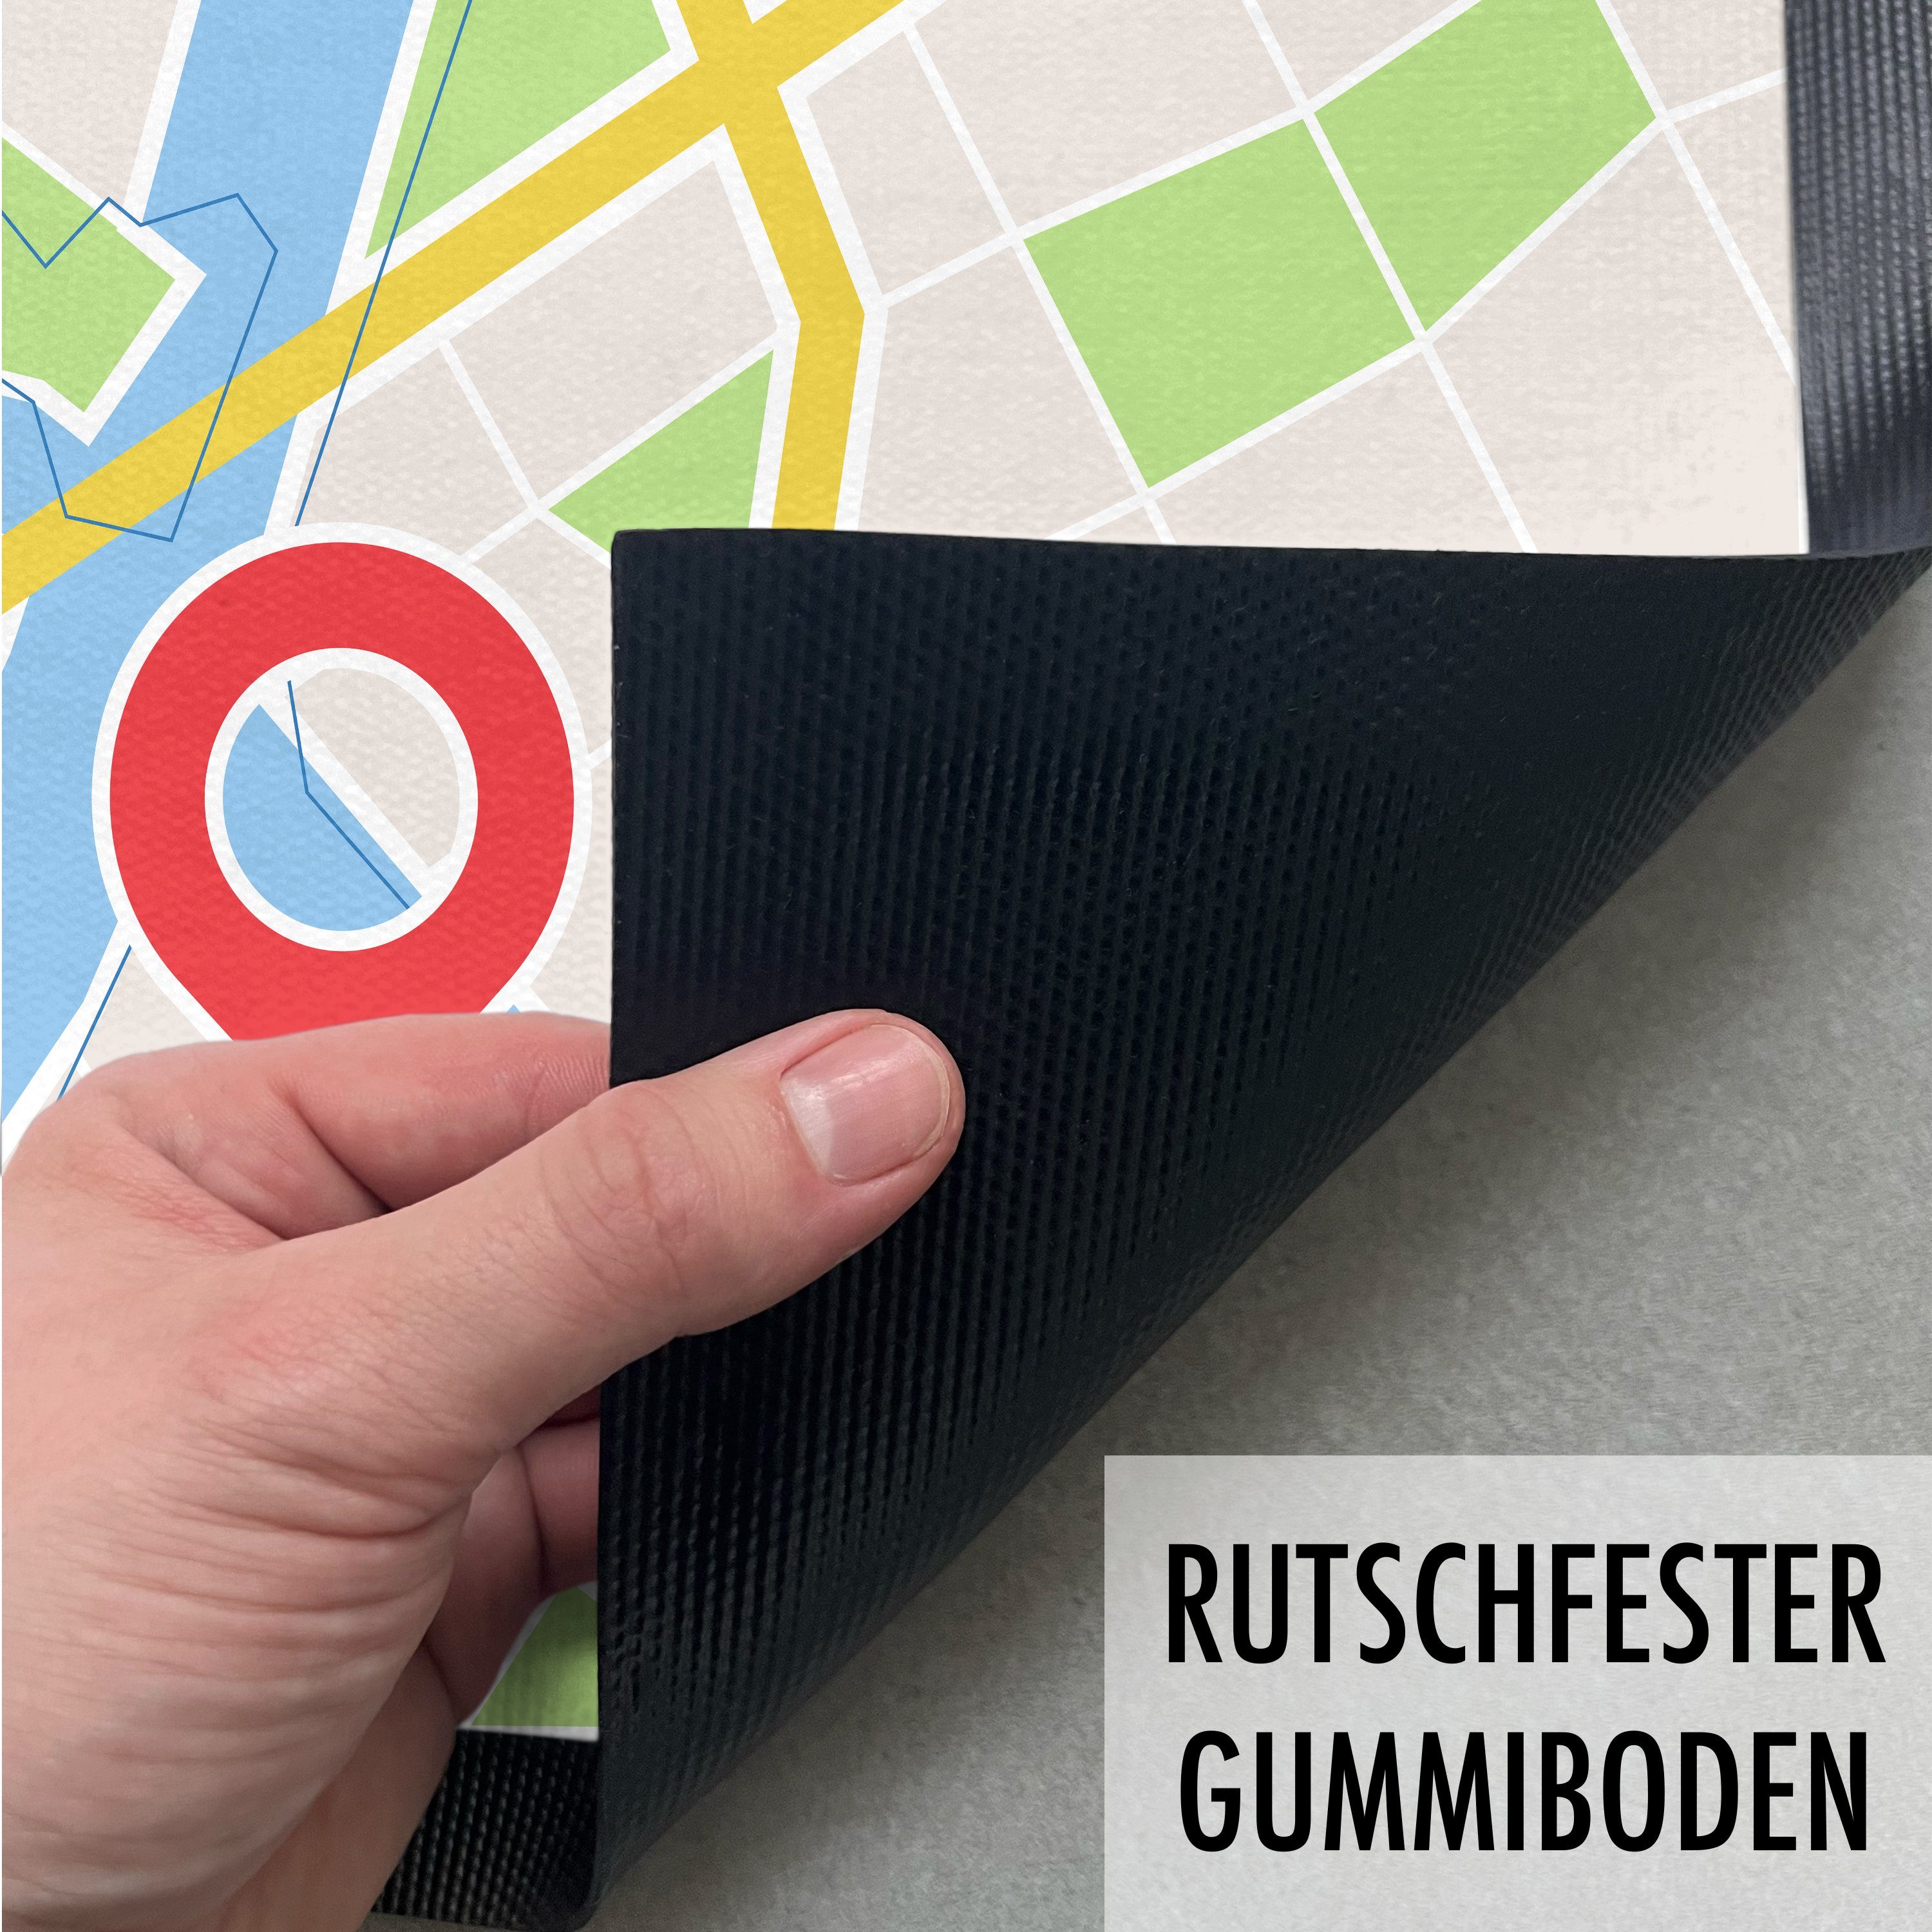 Fußmatte 60x40 Fußmatte Außen Erreicht Lustig Geschenk Inne, Ziel Trendation Stadtkarte und